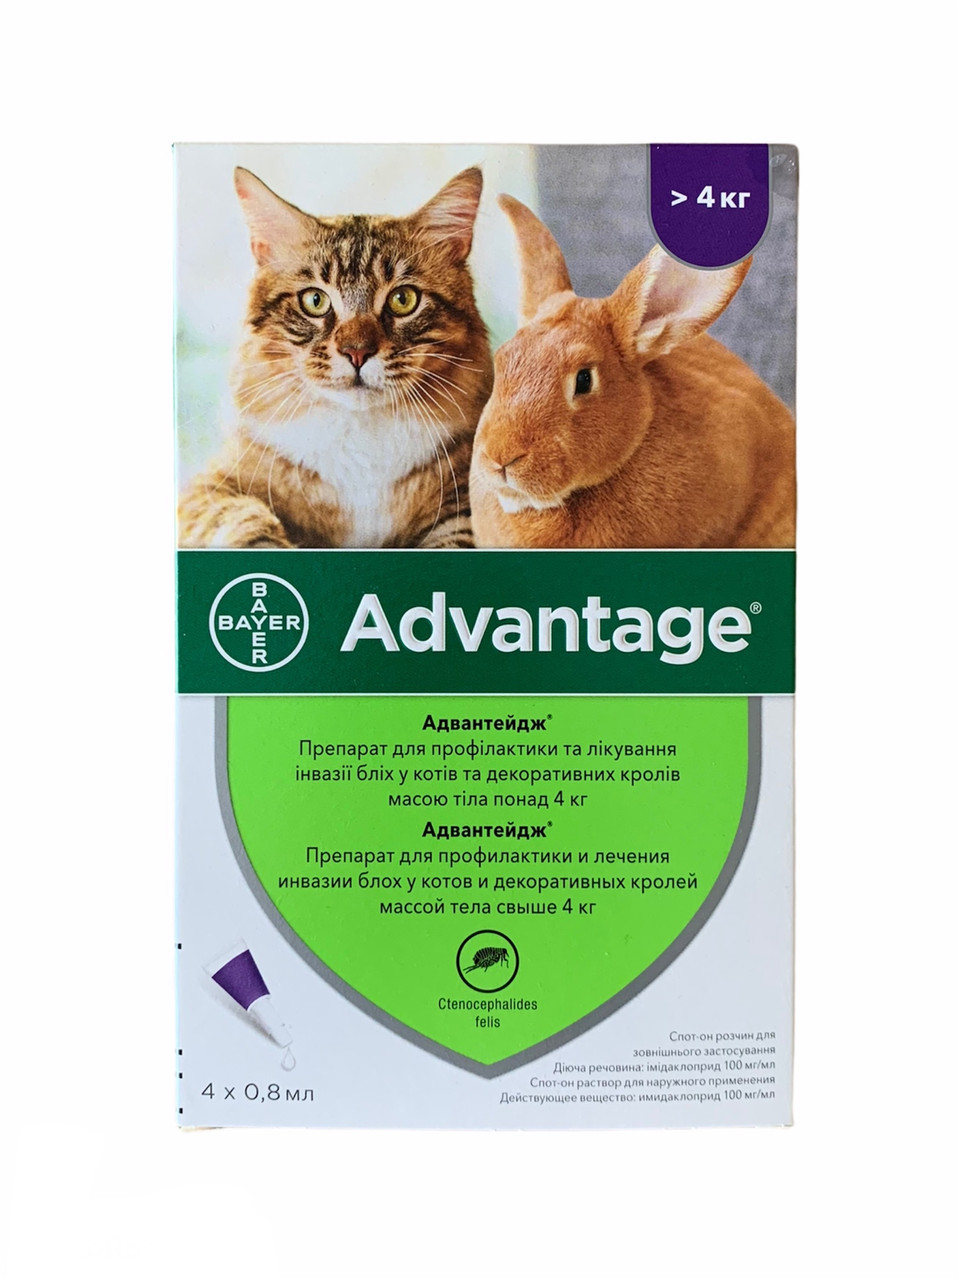 Advantage (Адвантікс®) понад 4кг - для котів і кролів